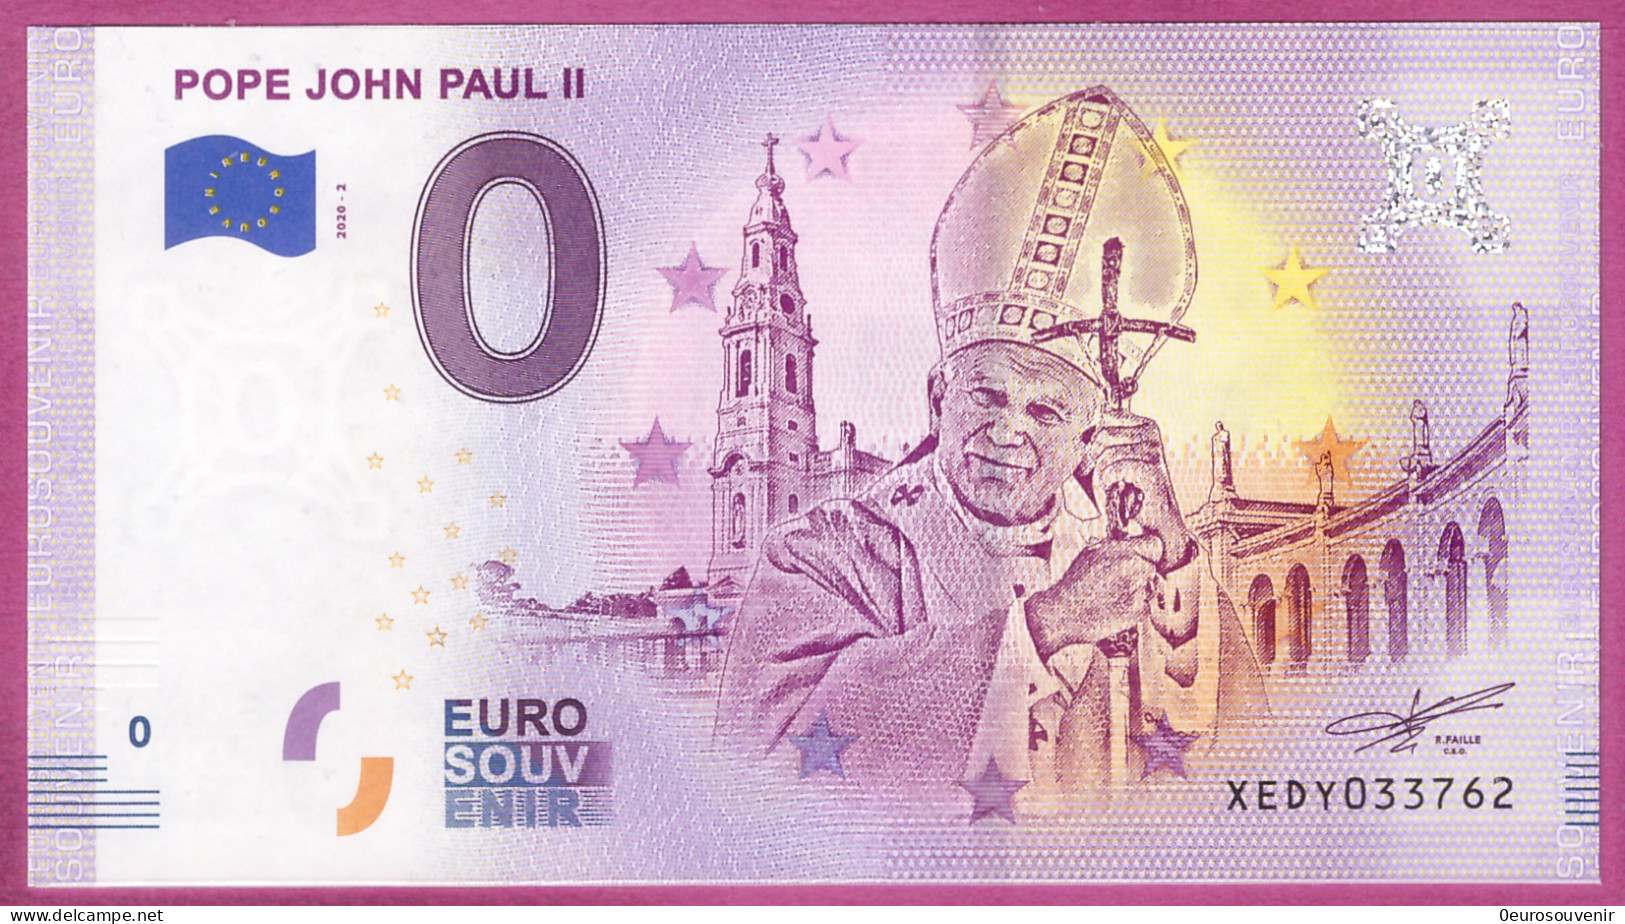 0-Euro XEDY 2020-2  POPE JOHN PAUL II - PAPST JOHANNES PAUL II. - Privatentwürfe